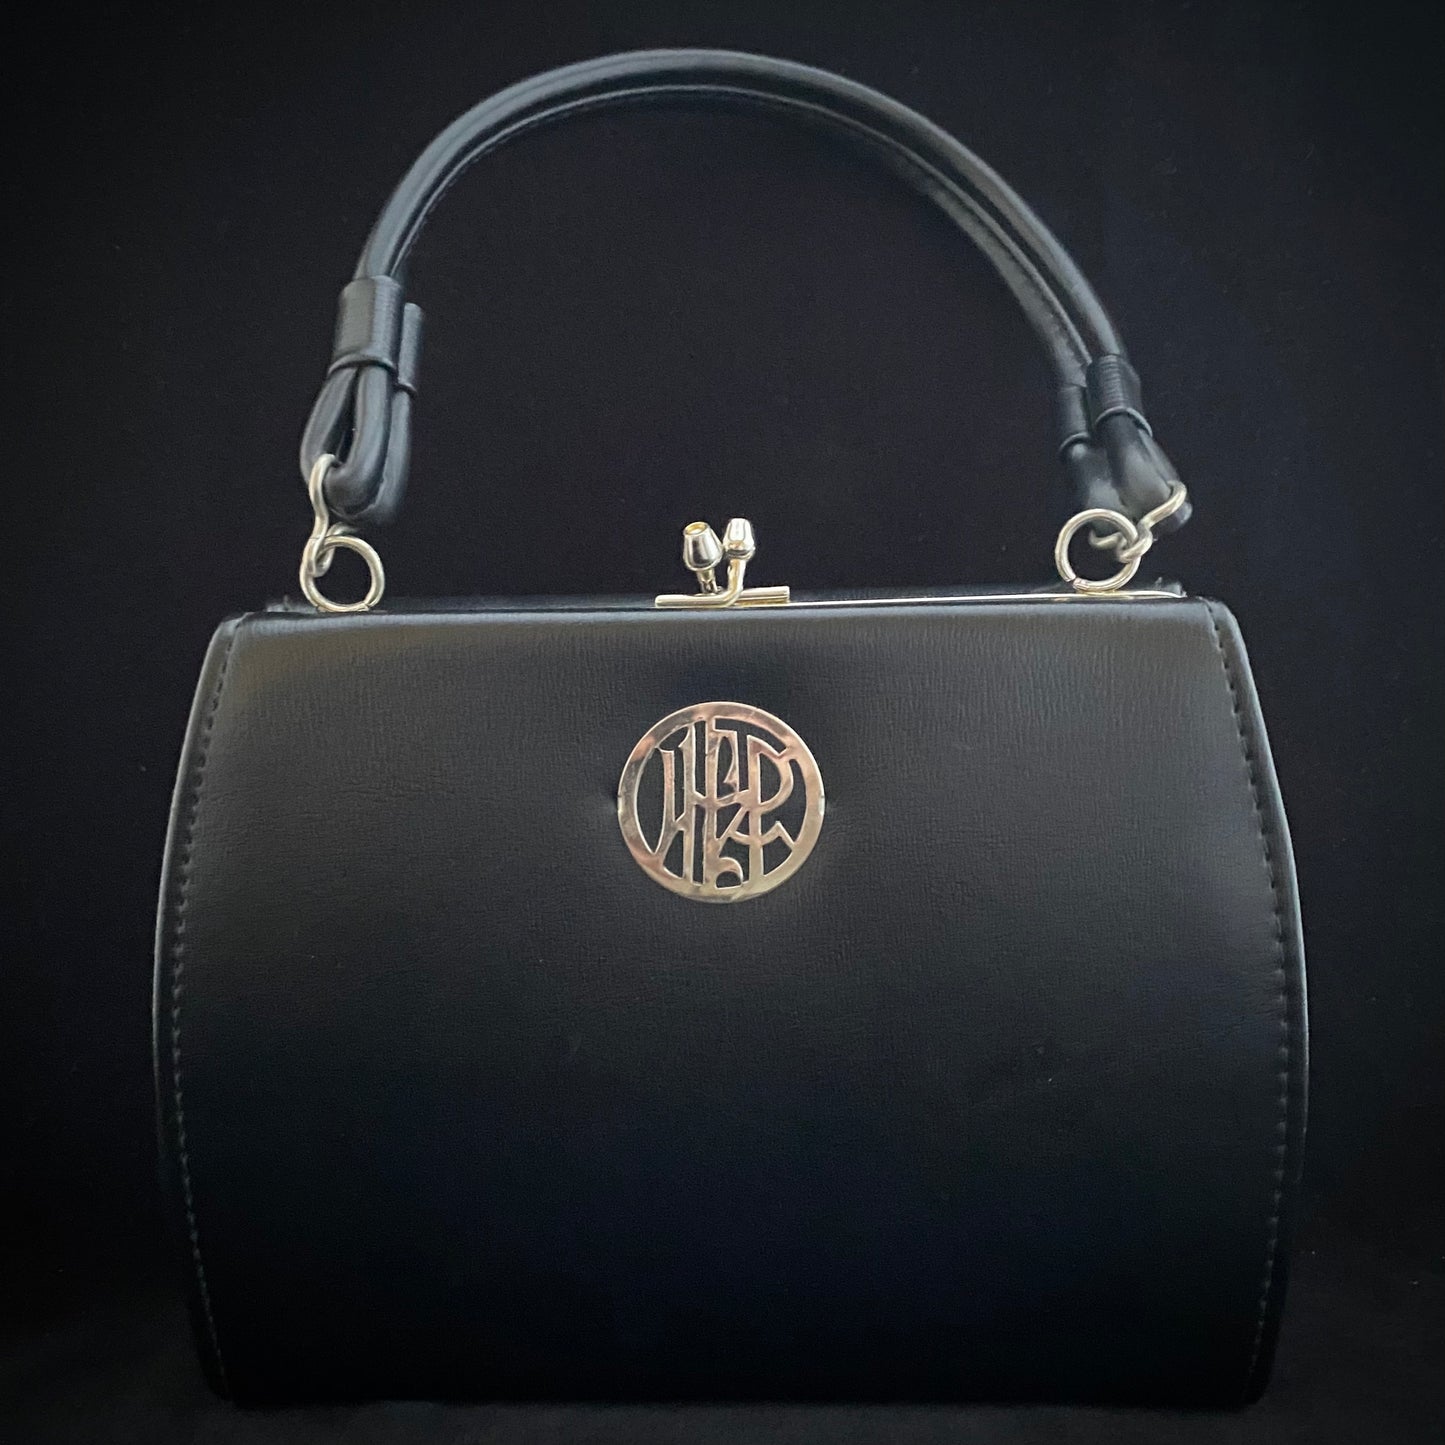 1960s Black Dover Handbag